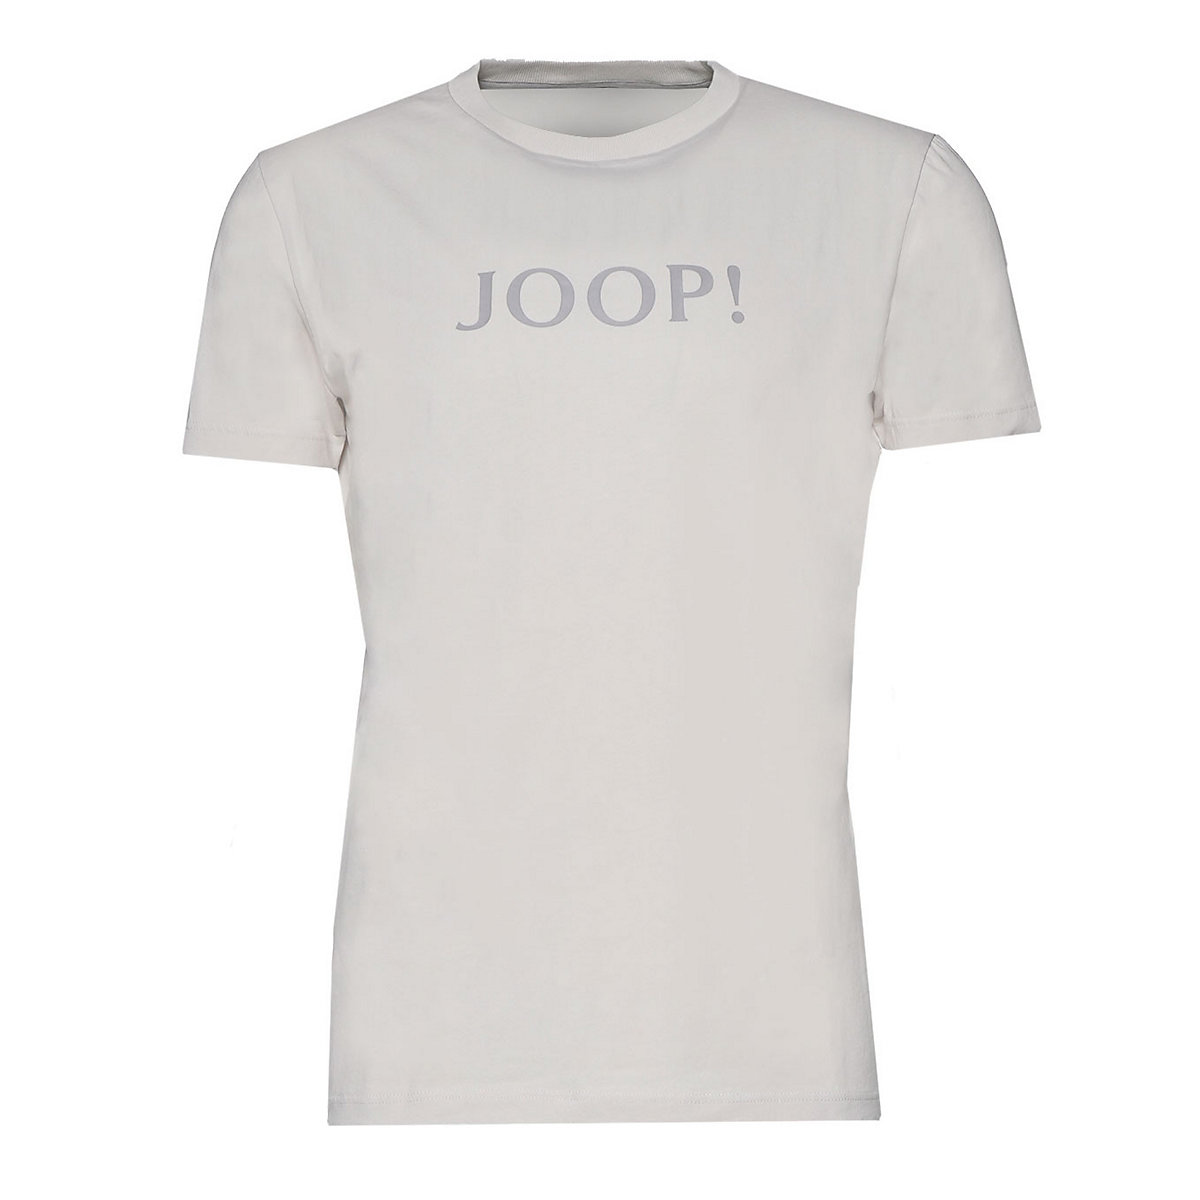 JOOP! Herren T-Shirt Loungewear Rundhals Halbarm Logo Cotton Stretch T-Shirts hellgrau